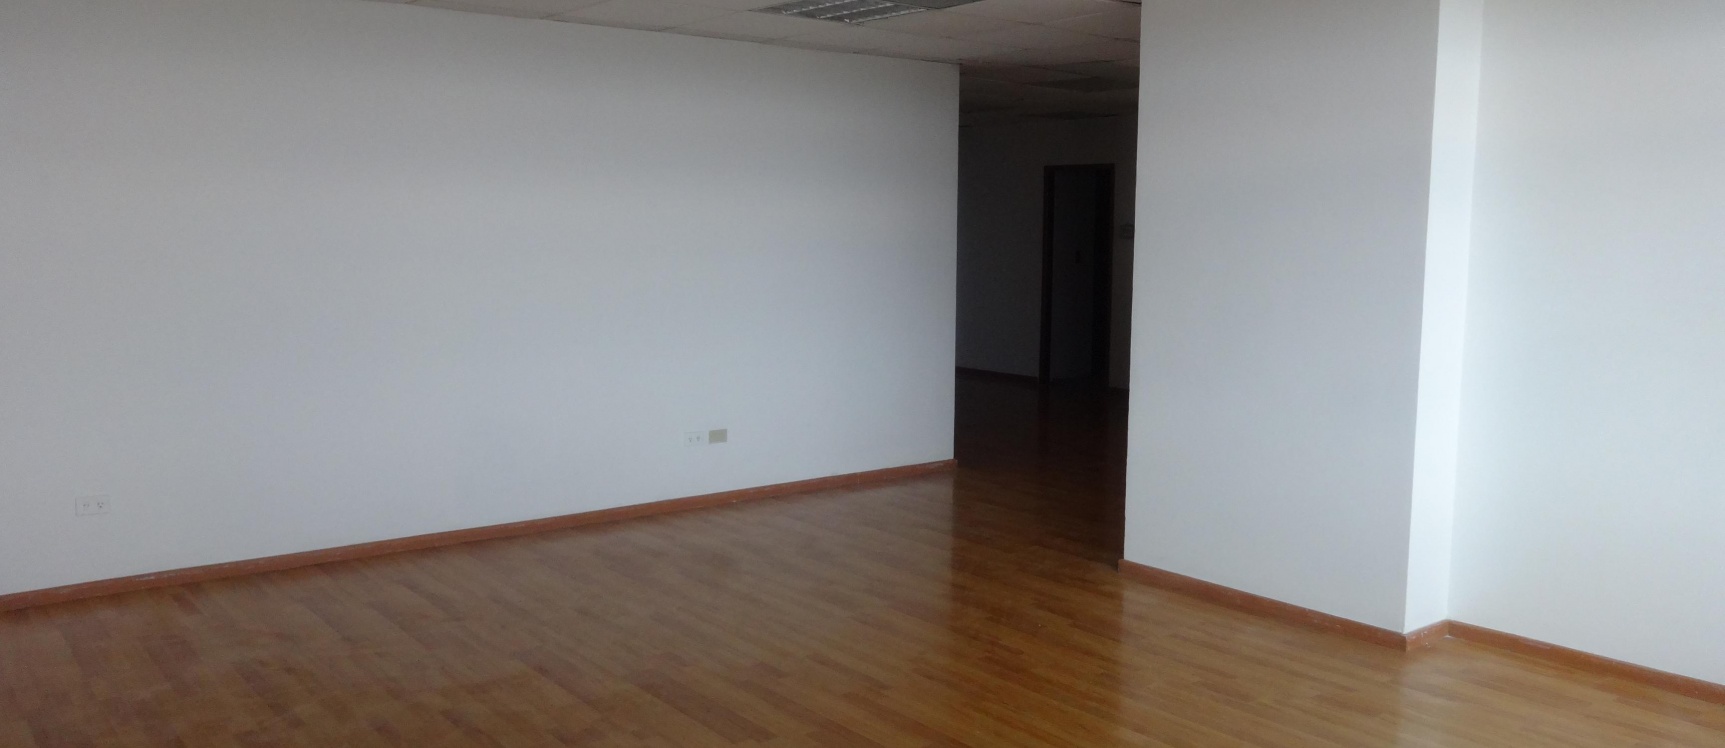 GeoBienes - Alquilo oficina en Torres del Norte, Guayaquil - Plusvalia Guayaquil Casas de venta y alquiler Inmobiliaria Ecuador